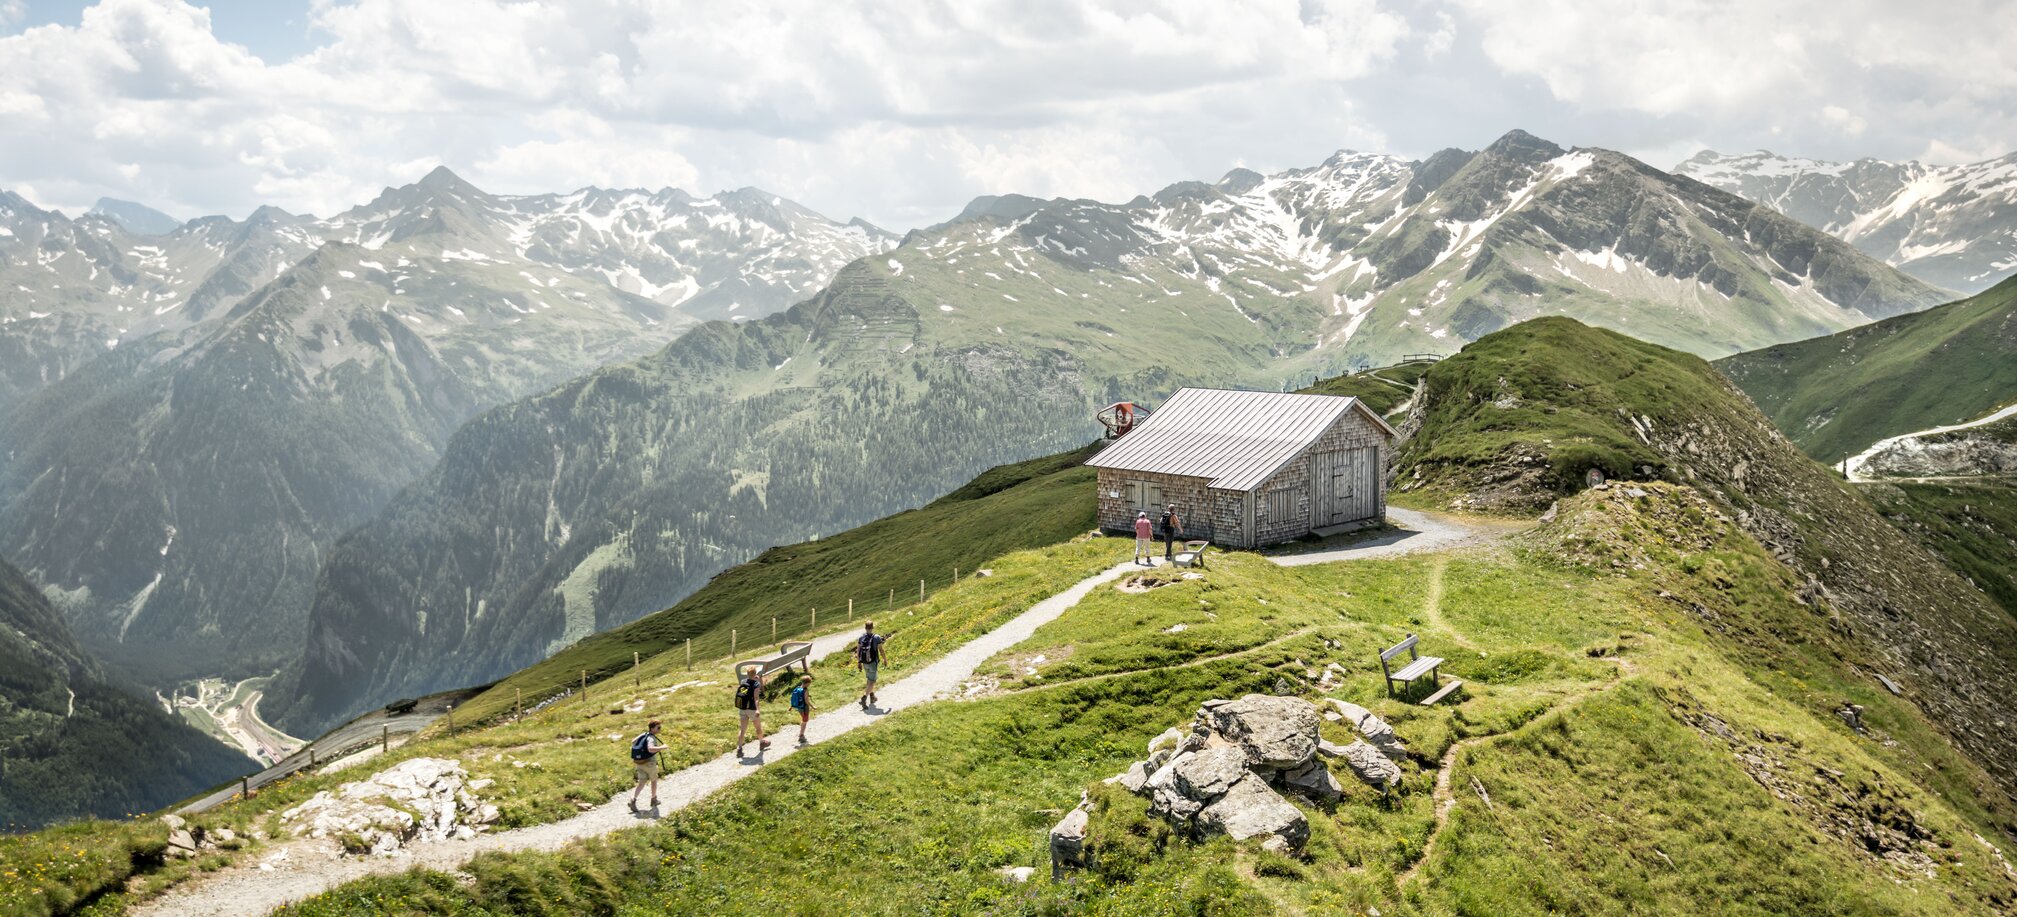 Hiking in Gastein Valley during summer in the mountains of Ski amadé | © Gasteinertal Tourismus GmbH